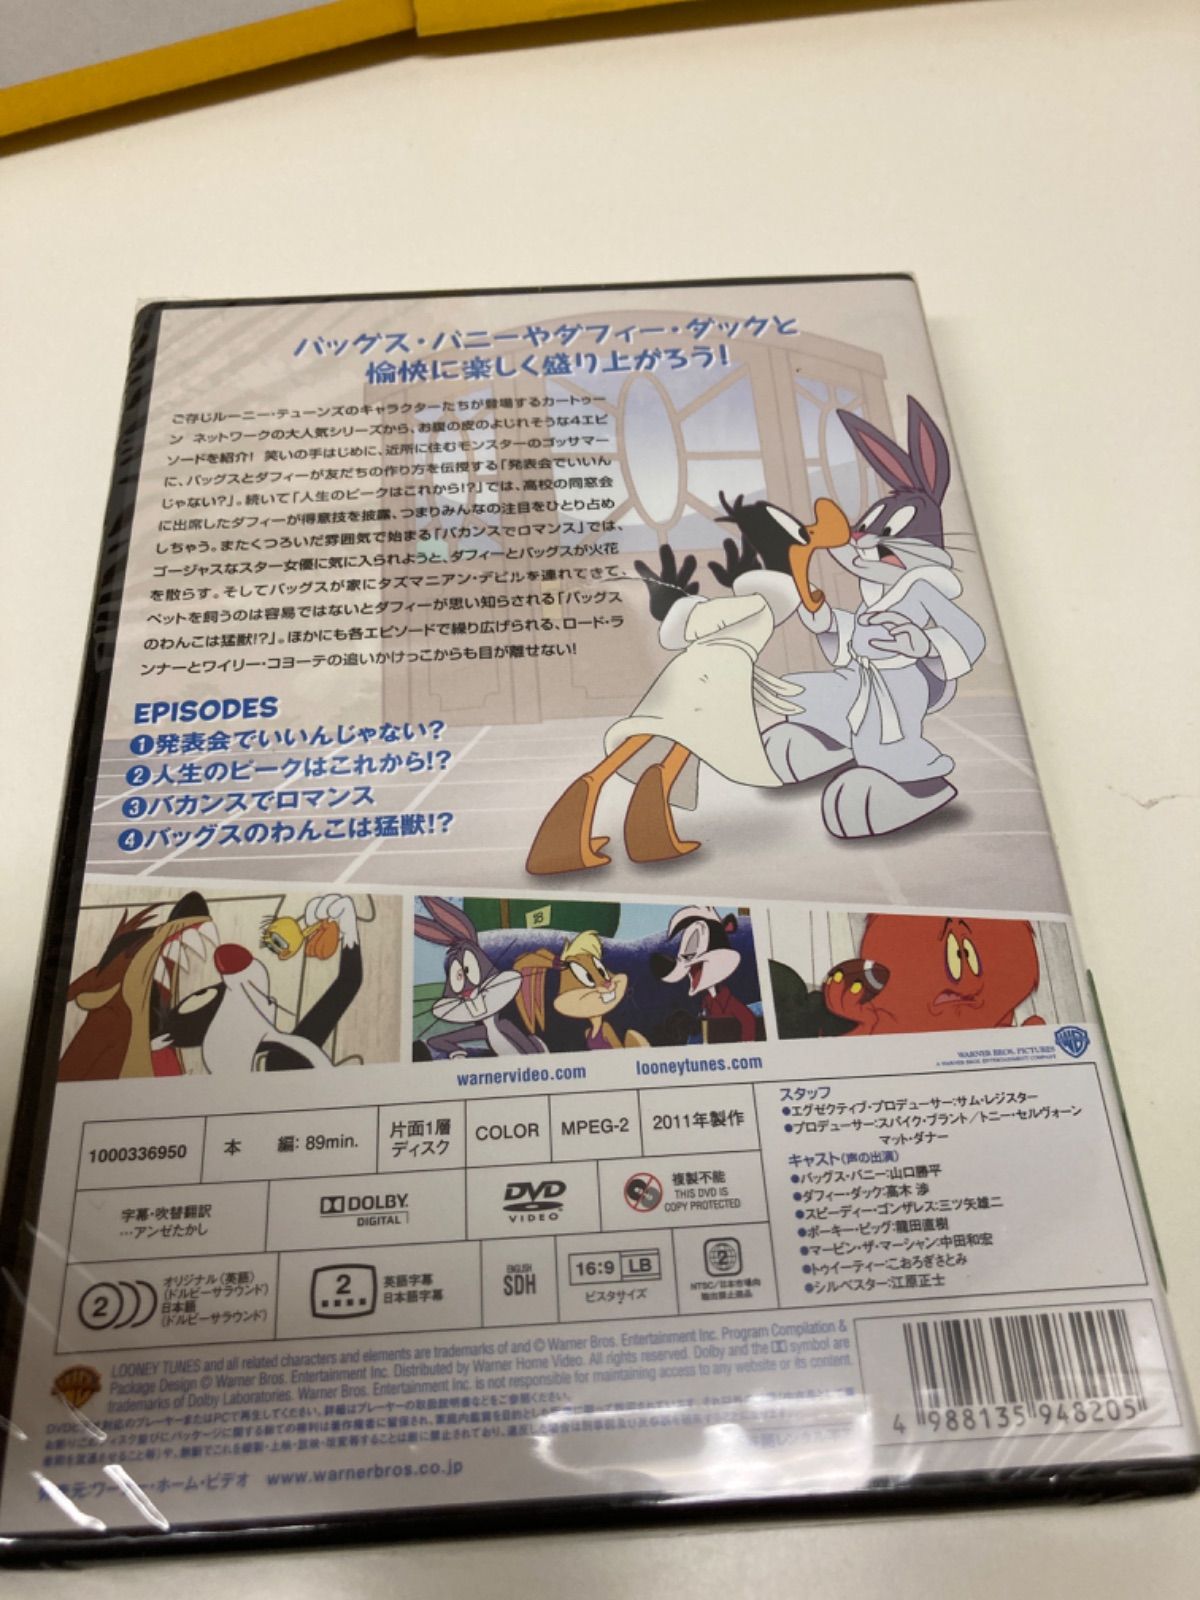 ルーニー テューンズ ショー: ファーストシーズン Vol.2【DVD】